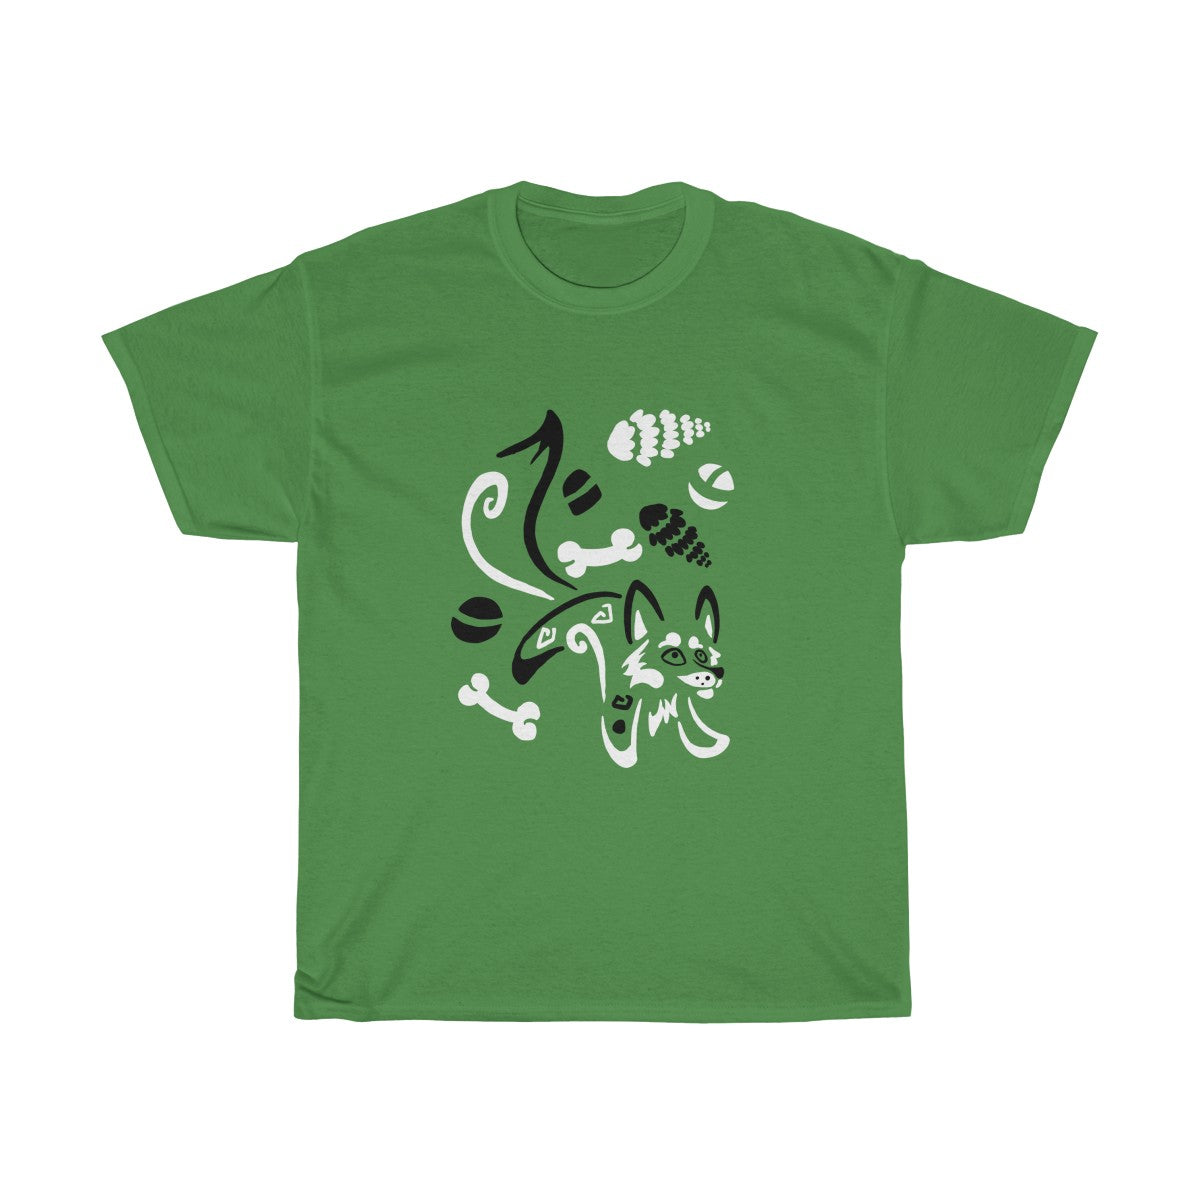 Yotes & Bones - T-Shirt T-Shirt Dire Creatures Green S 